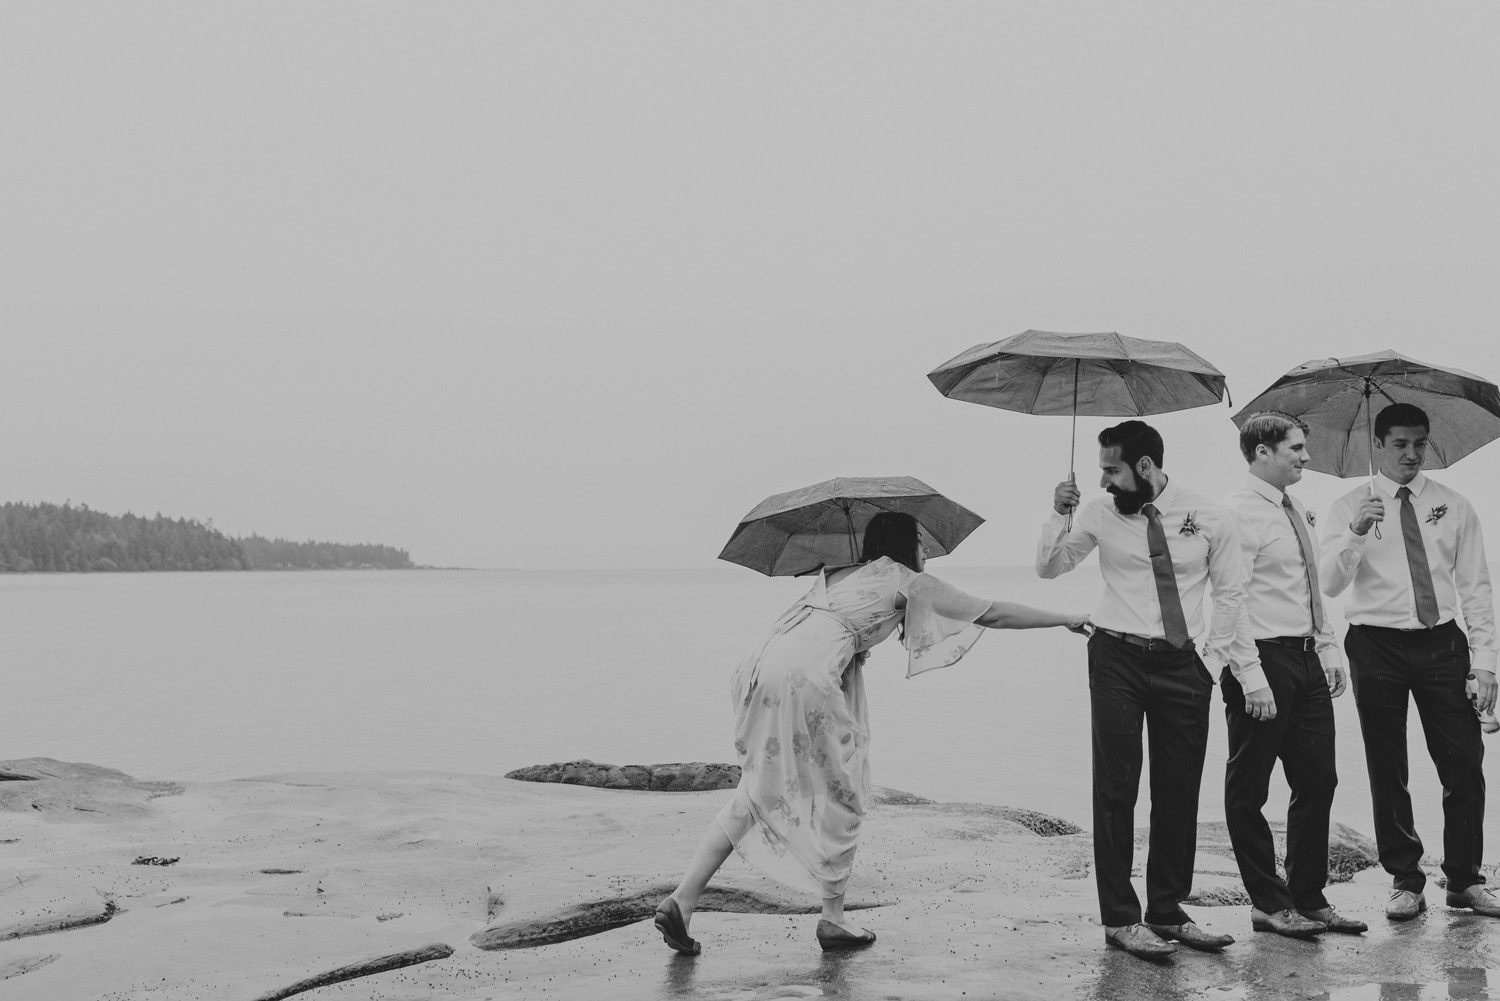 hornby island wedding in the rain